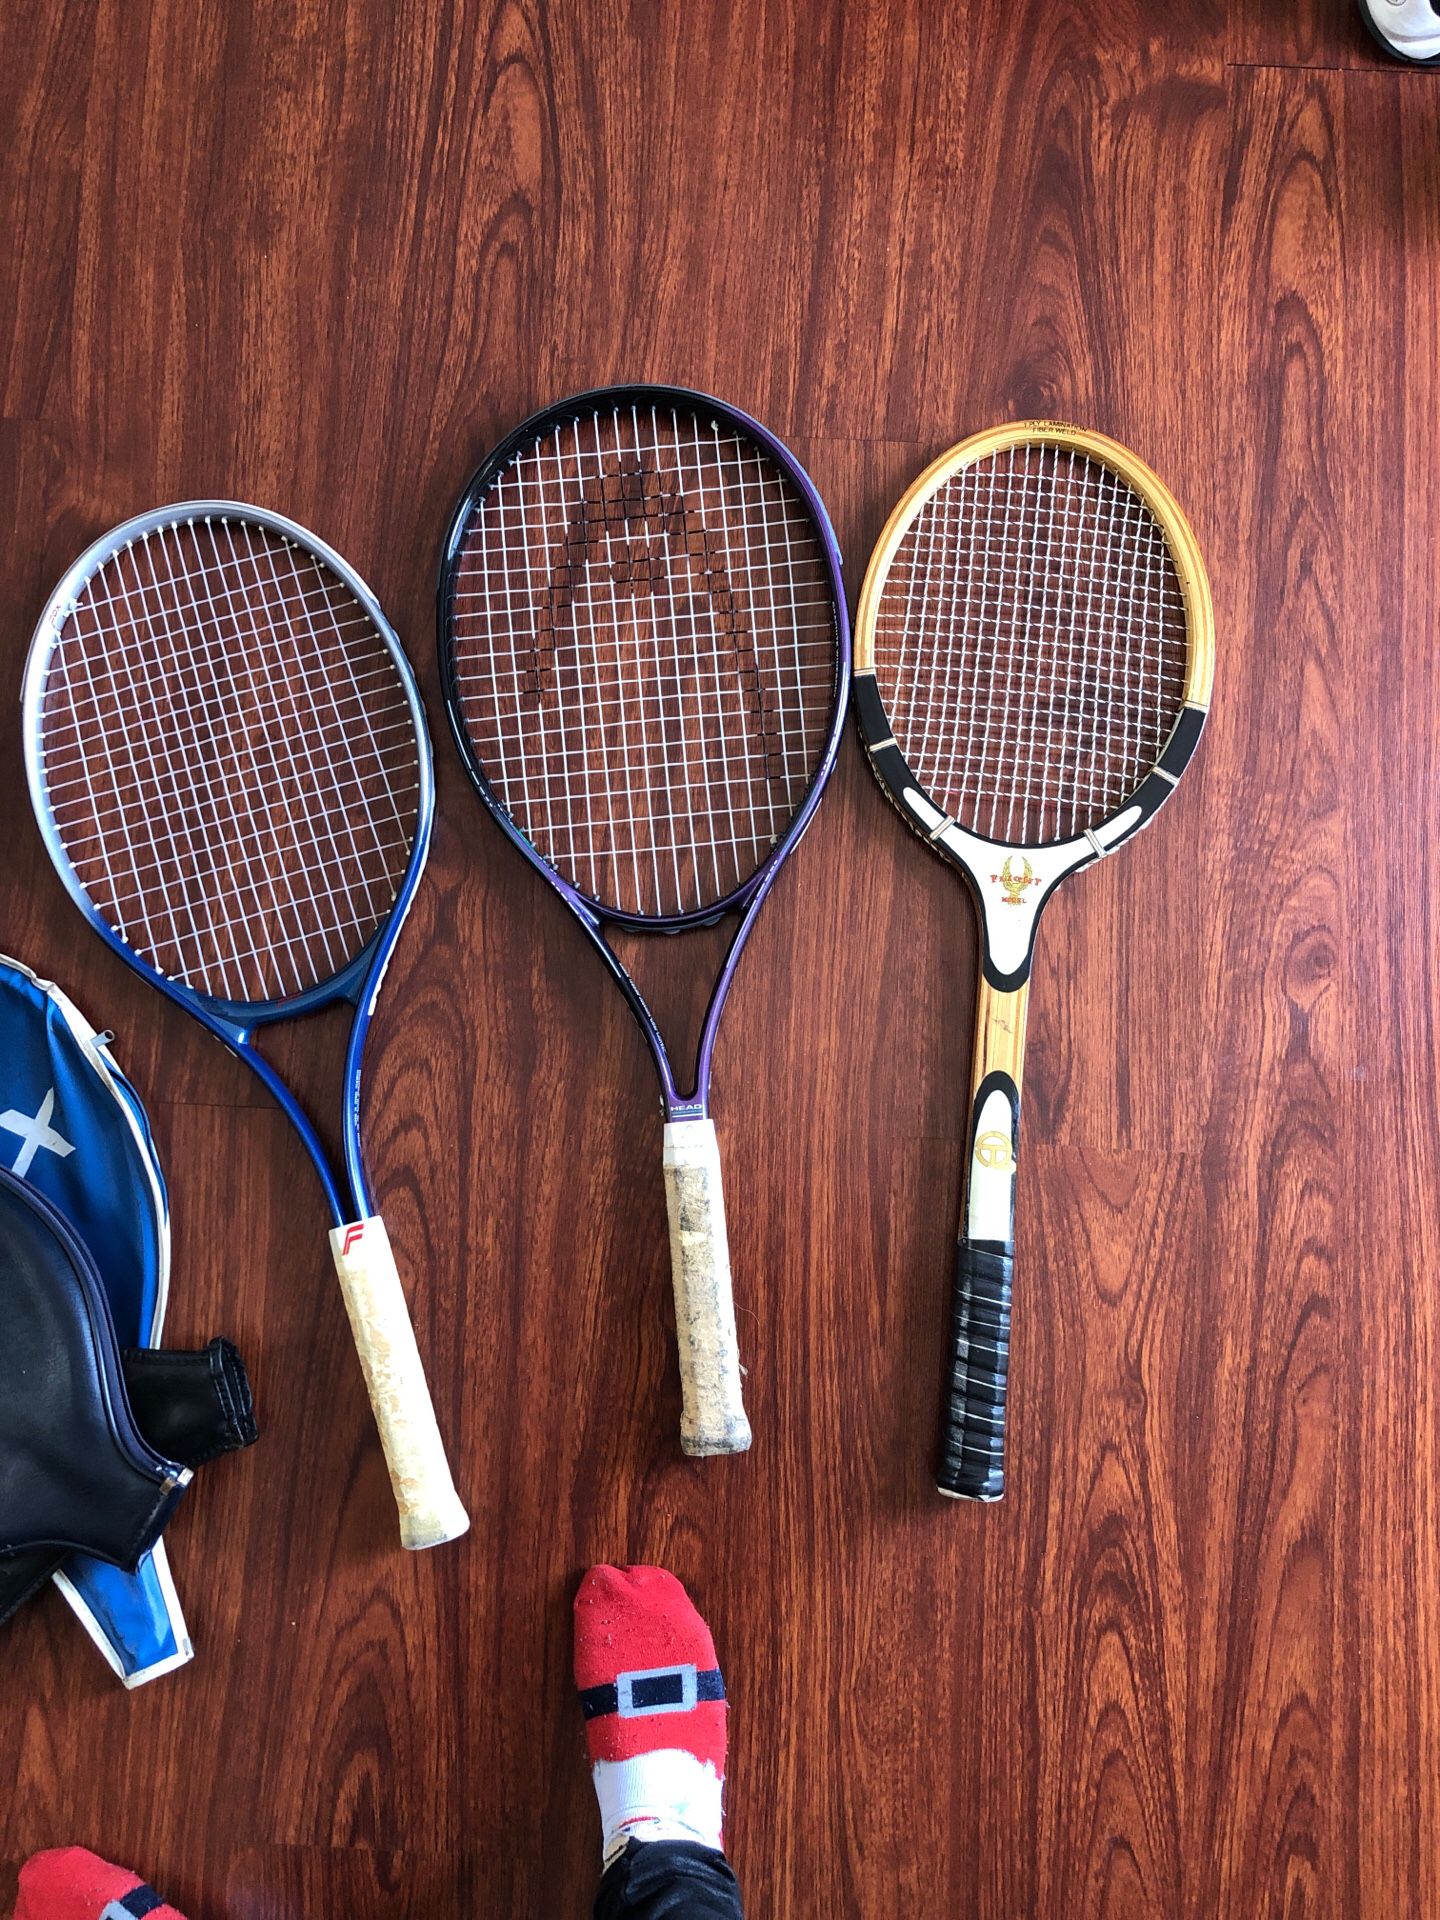 Tennis rackets $5 each